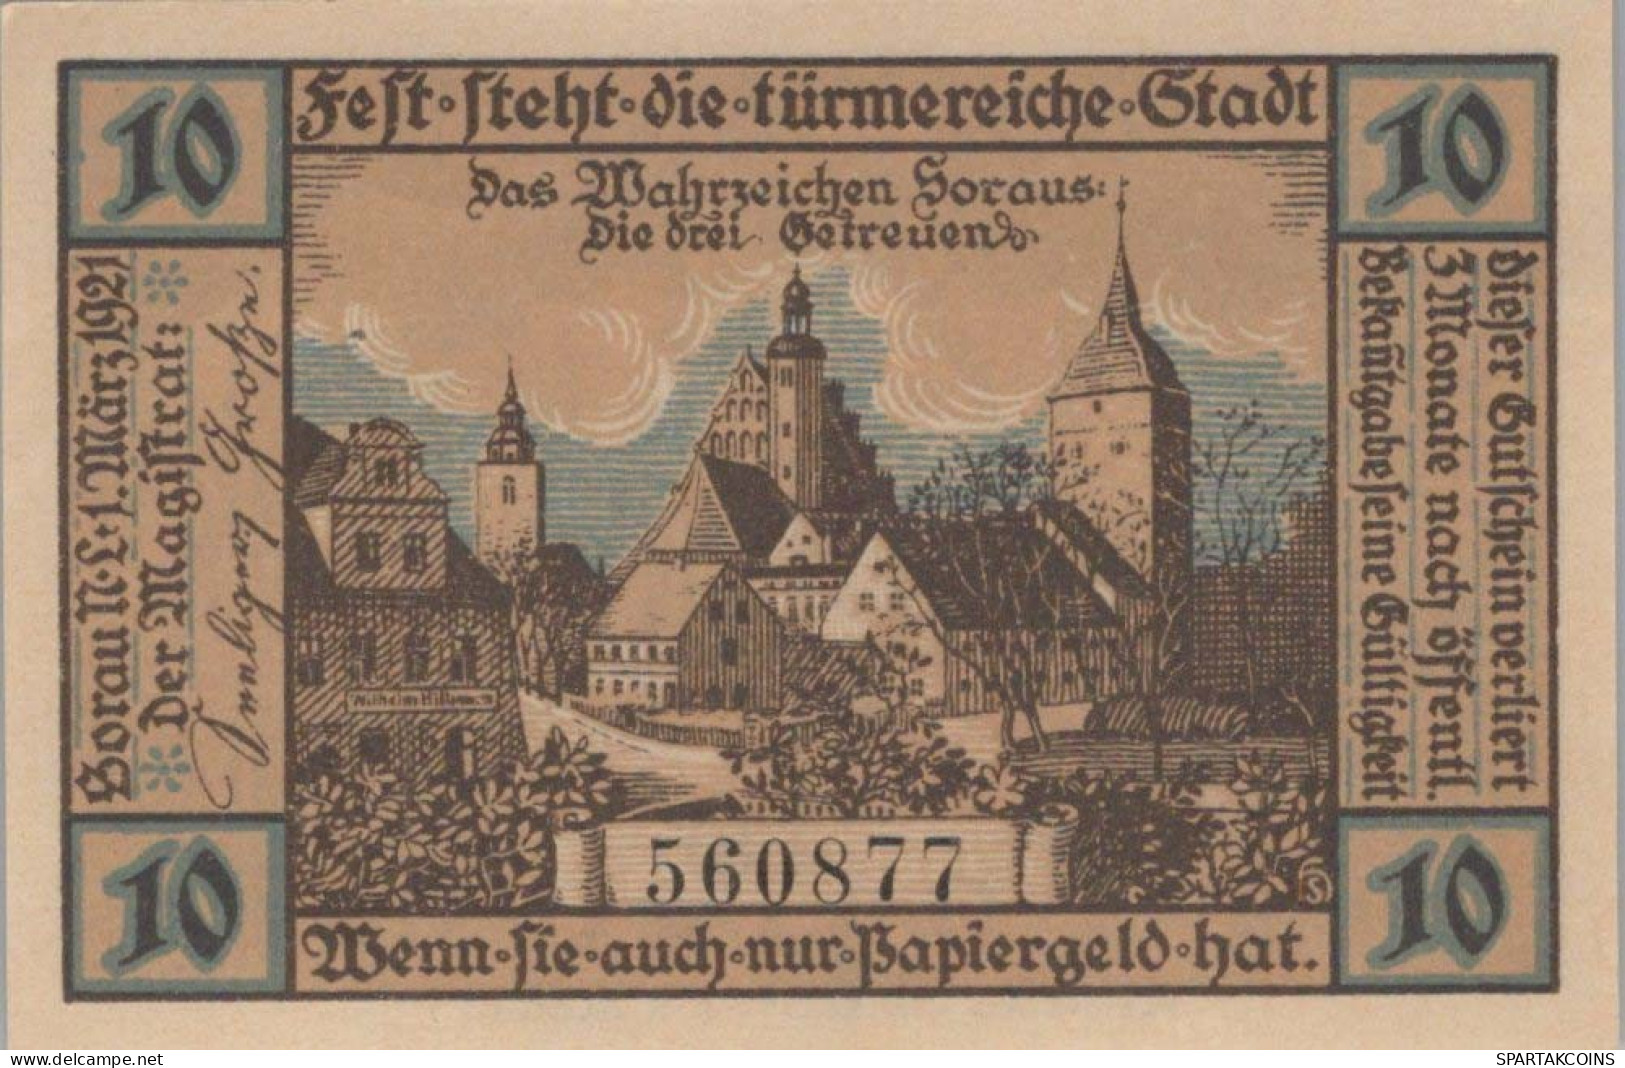 10 PFENNIG 1921 Stadt SORAU Brandenburg DEUTSCHLAND Notgeld Banknote #PG009 - [11] Local Banknote Issues